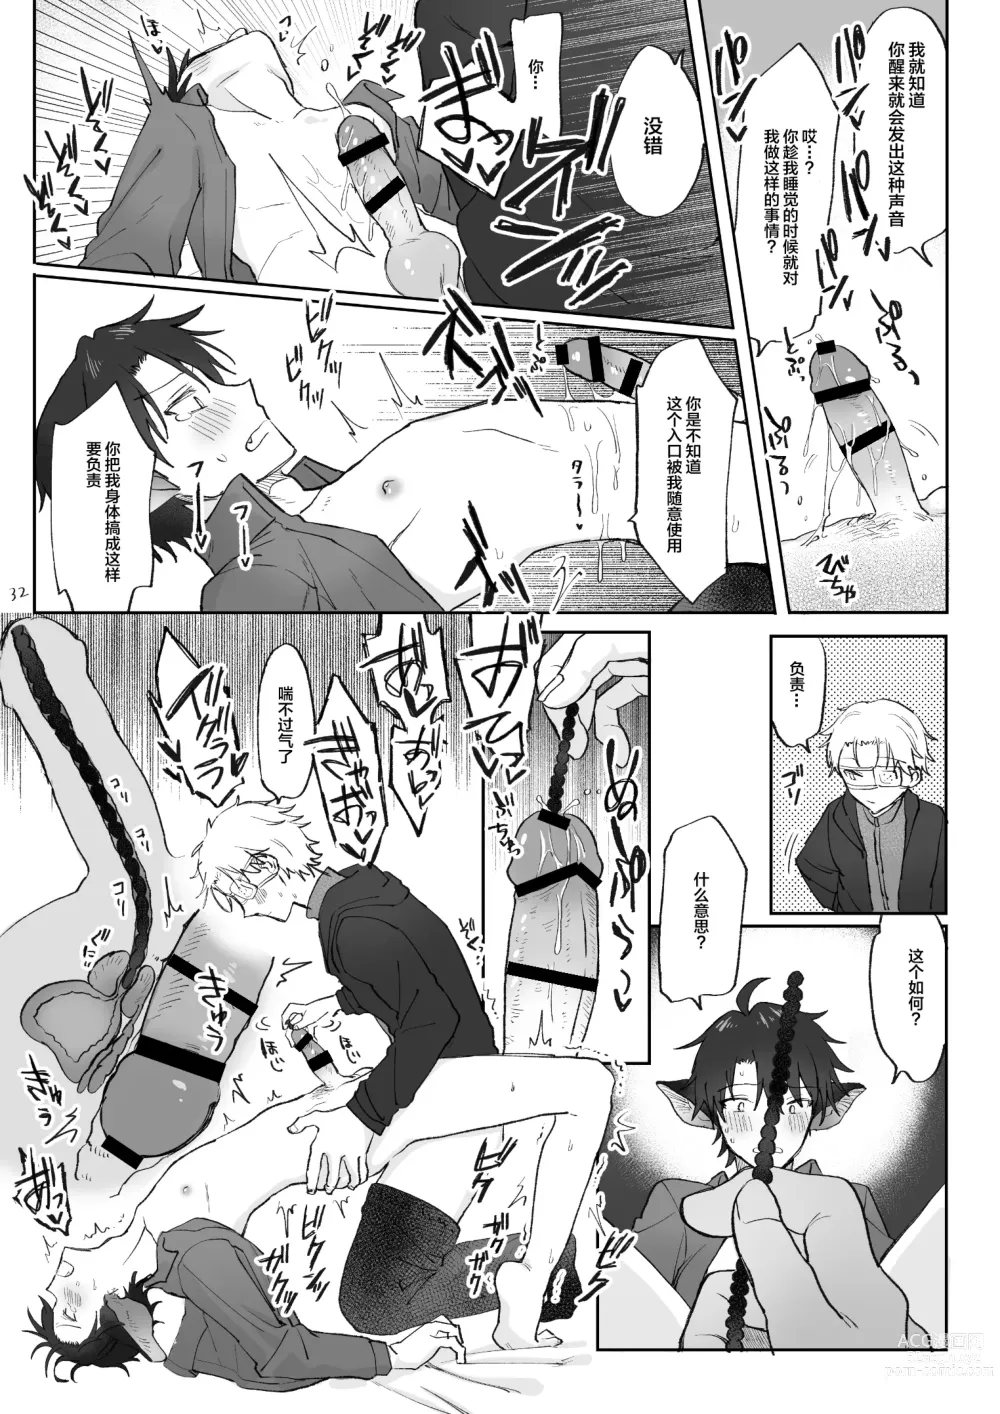 Page 33 of doujinshi 自慰直至喚醒吸血鬼